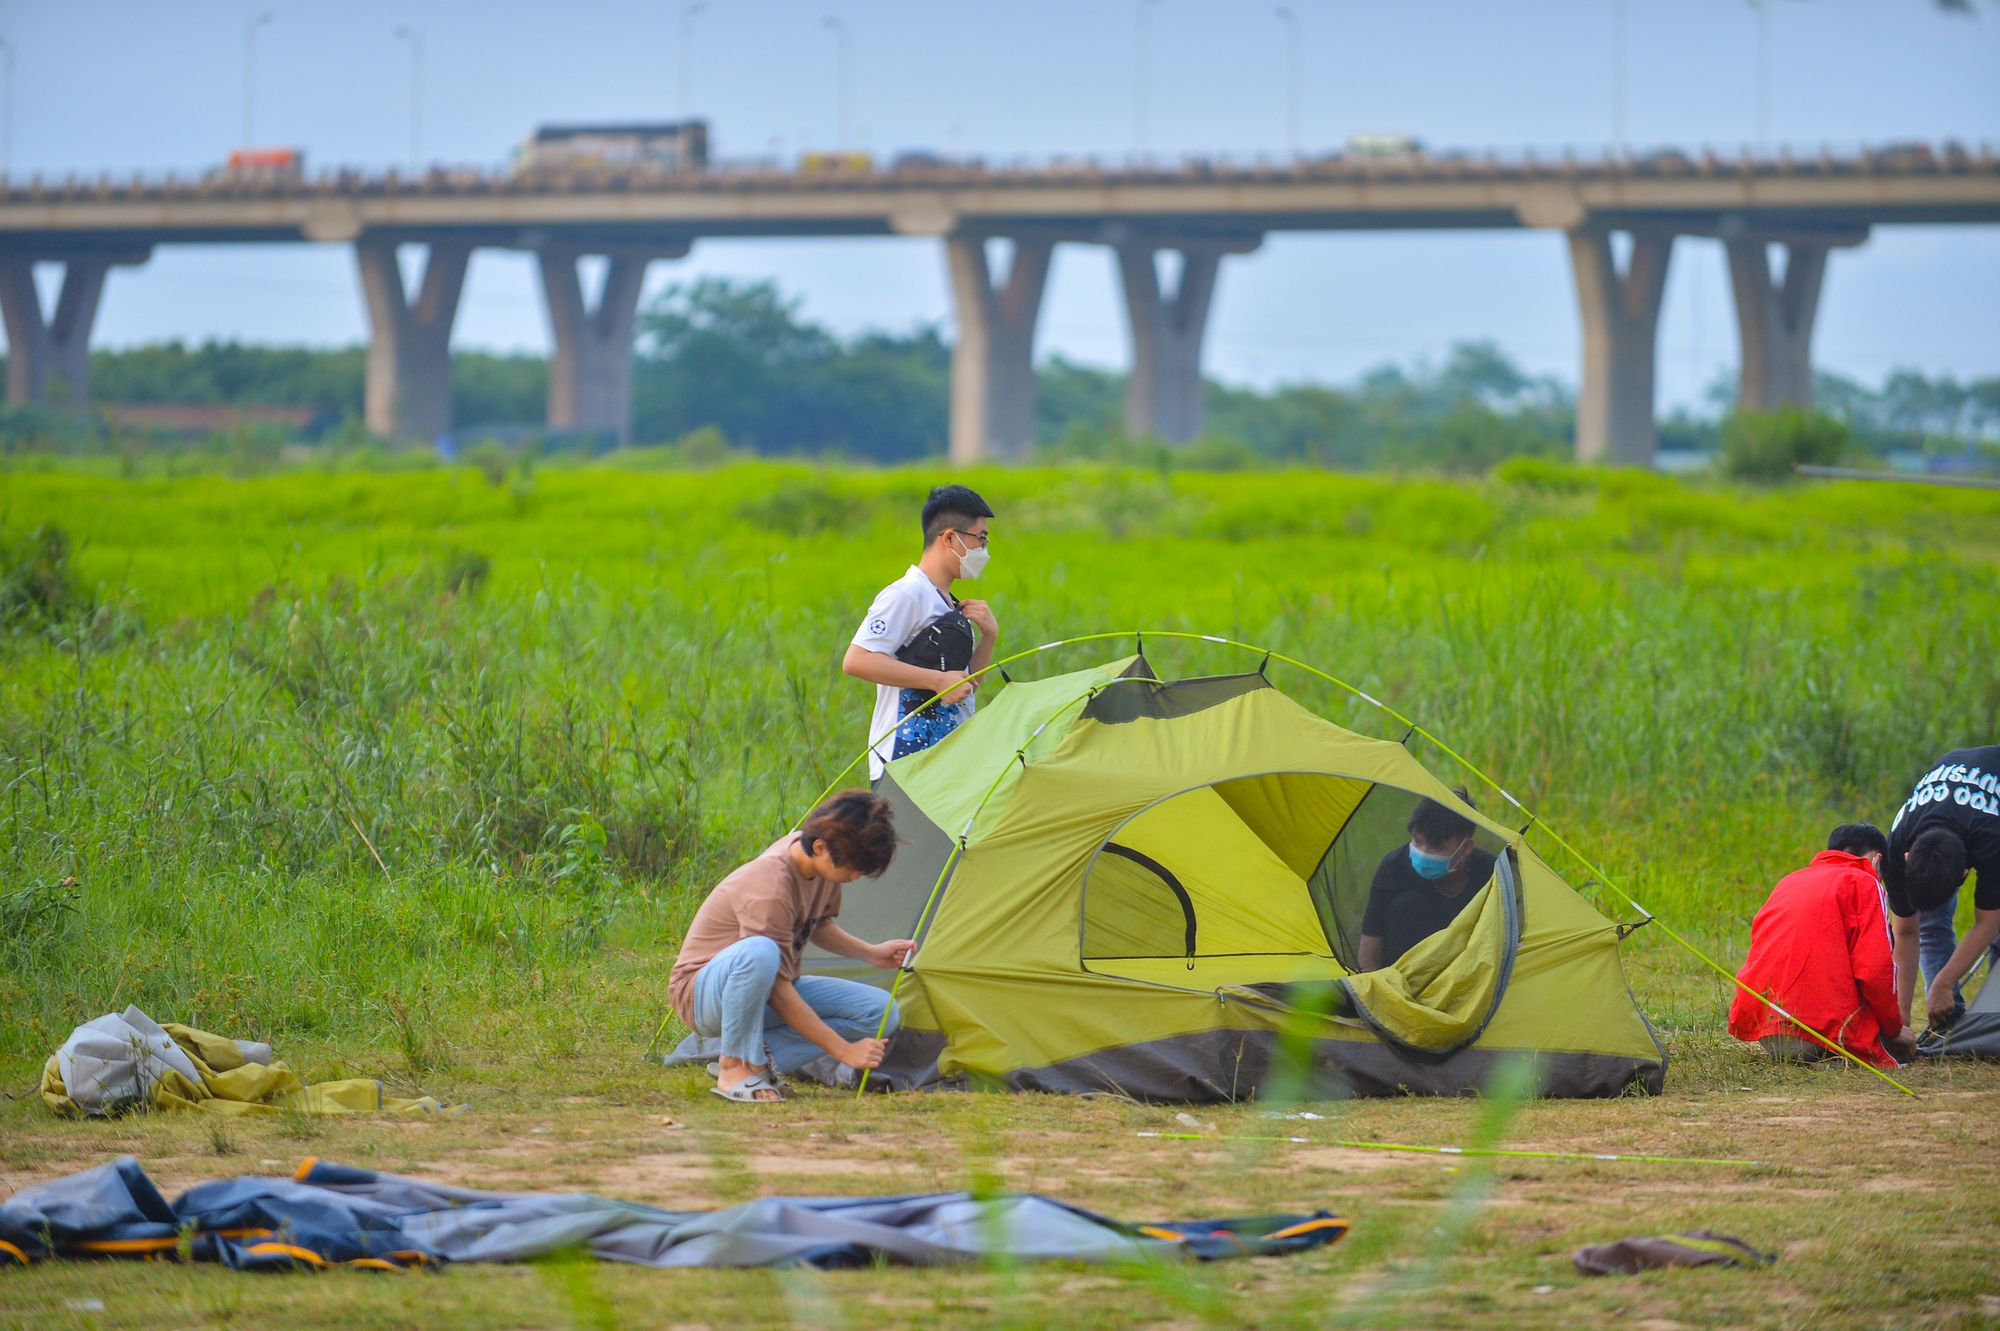 Bãi sông Hồng đông nghịt người cắm trại, vui chơi ngày cuối tuần - Ảnh 10.